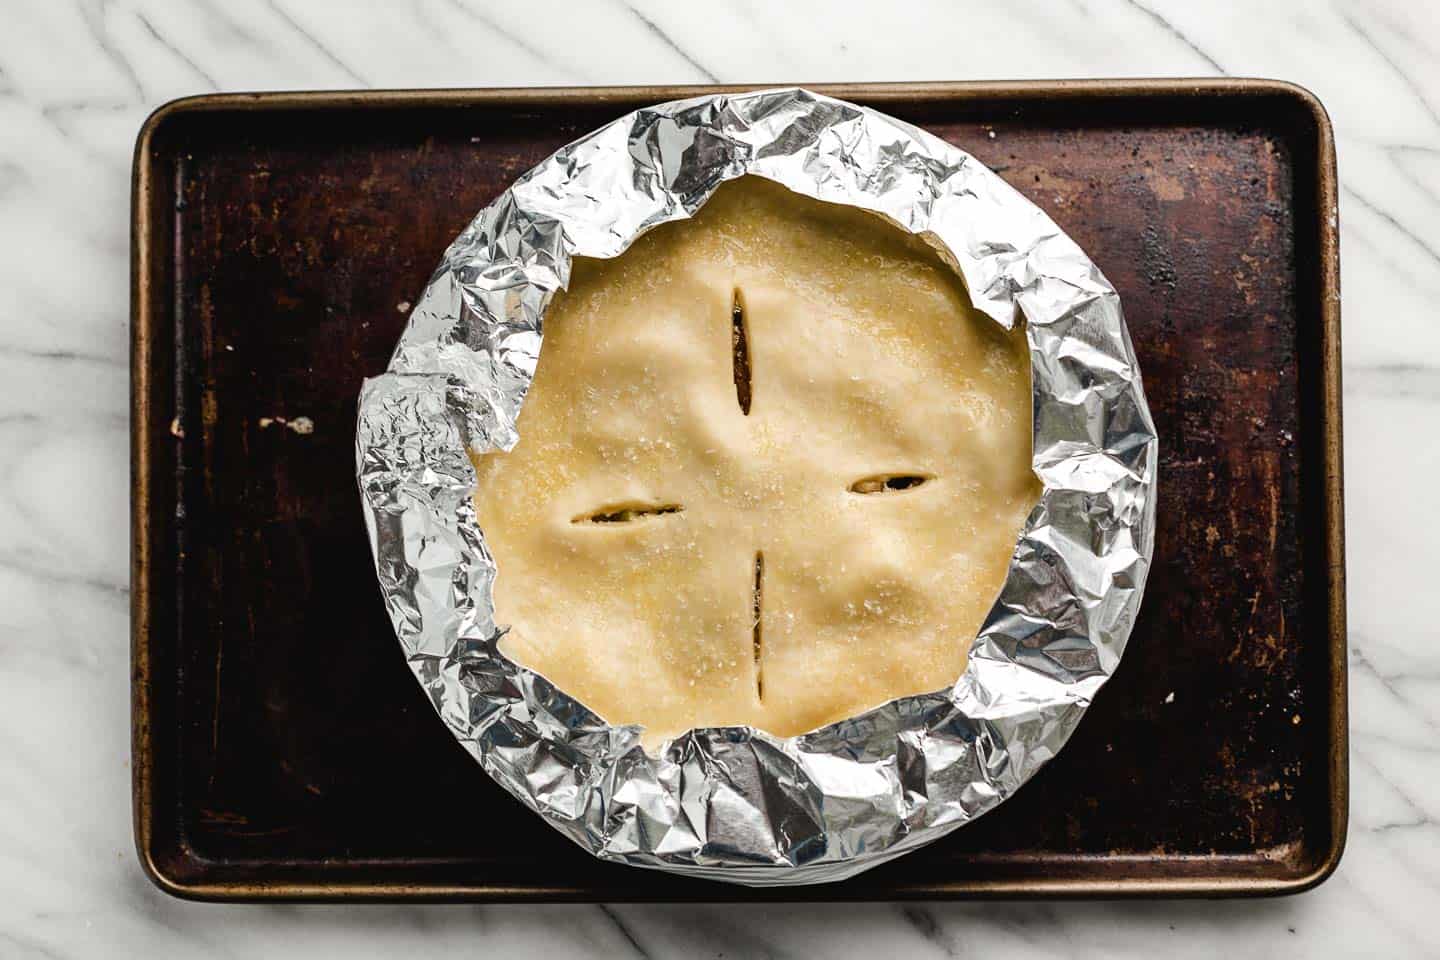 A pie shield on an apple pie.